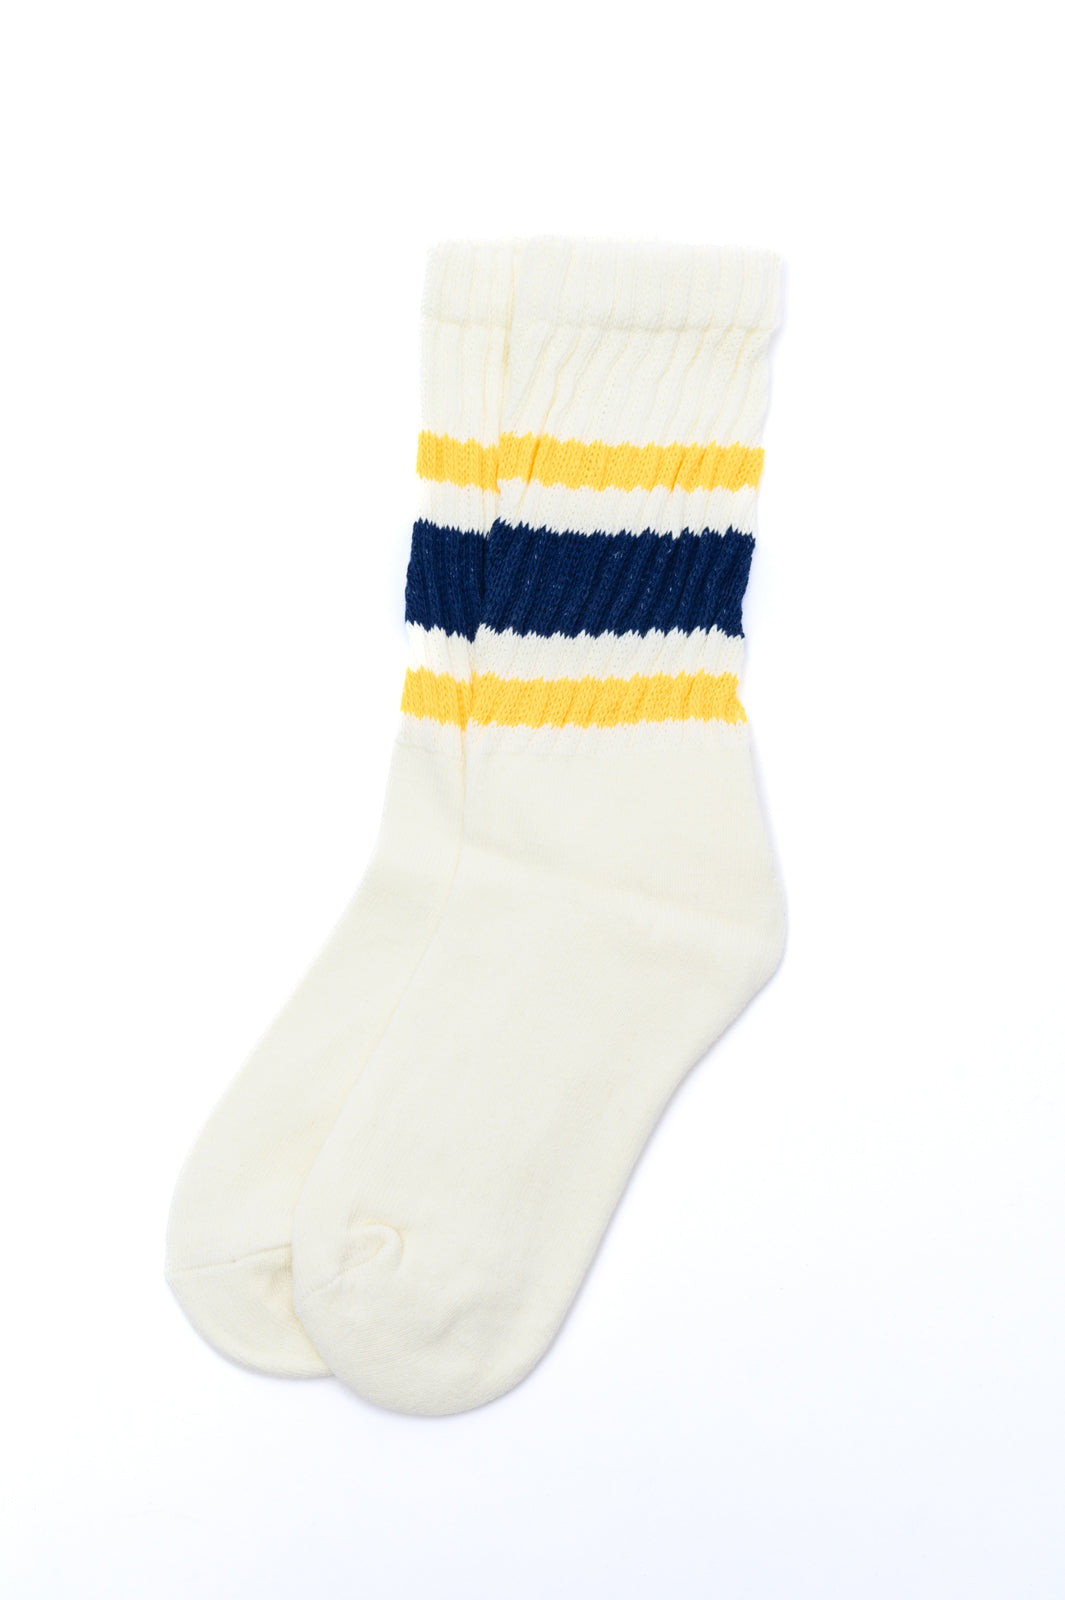 Los mejores calcetines para papá del mundo en azul marino y amarillo (exclusivo en línea) 